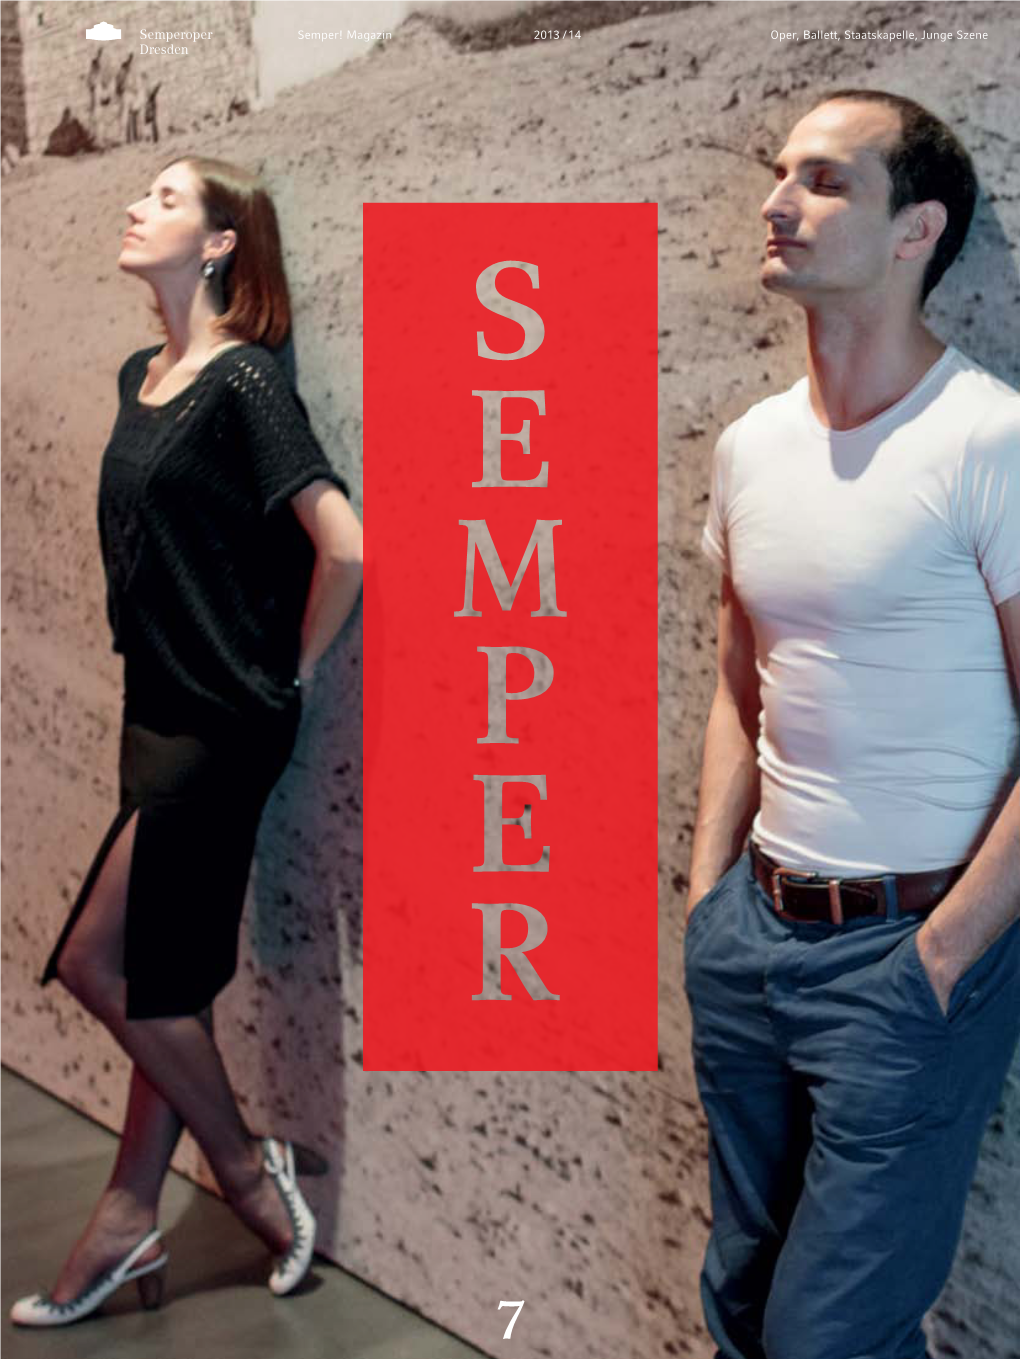 Oper, Ballett, Staatskapelle, Junge Szene 2013 / 14 Semper! Magazin